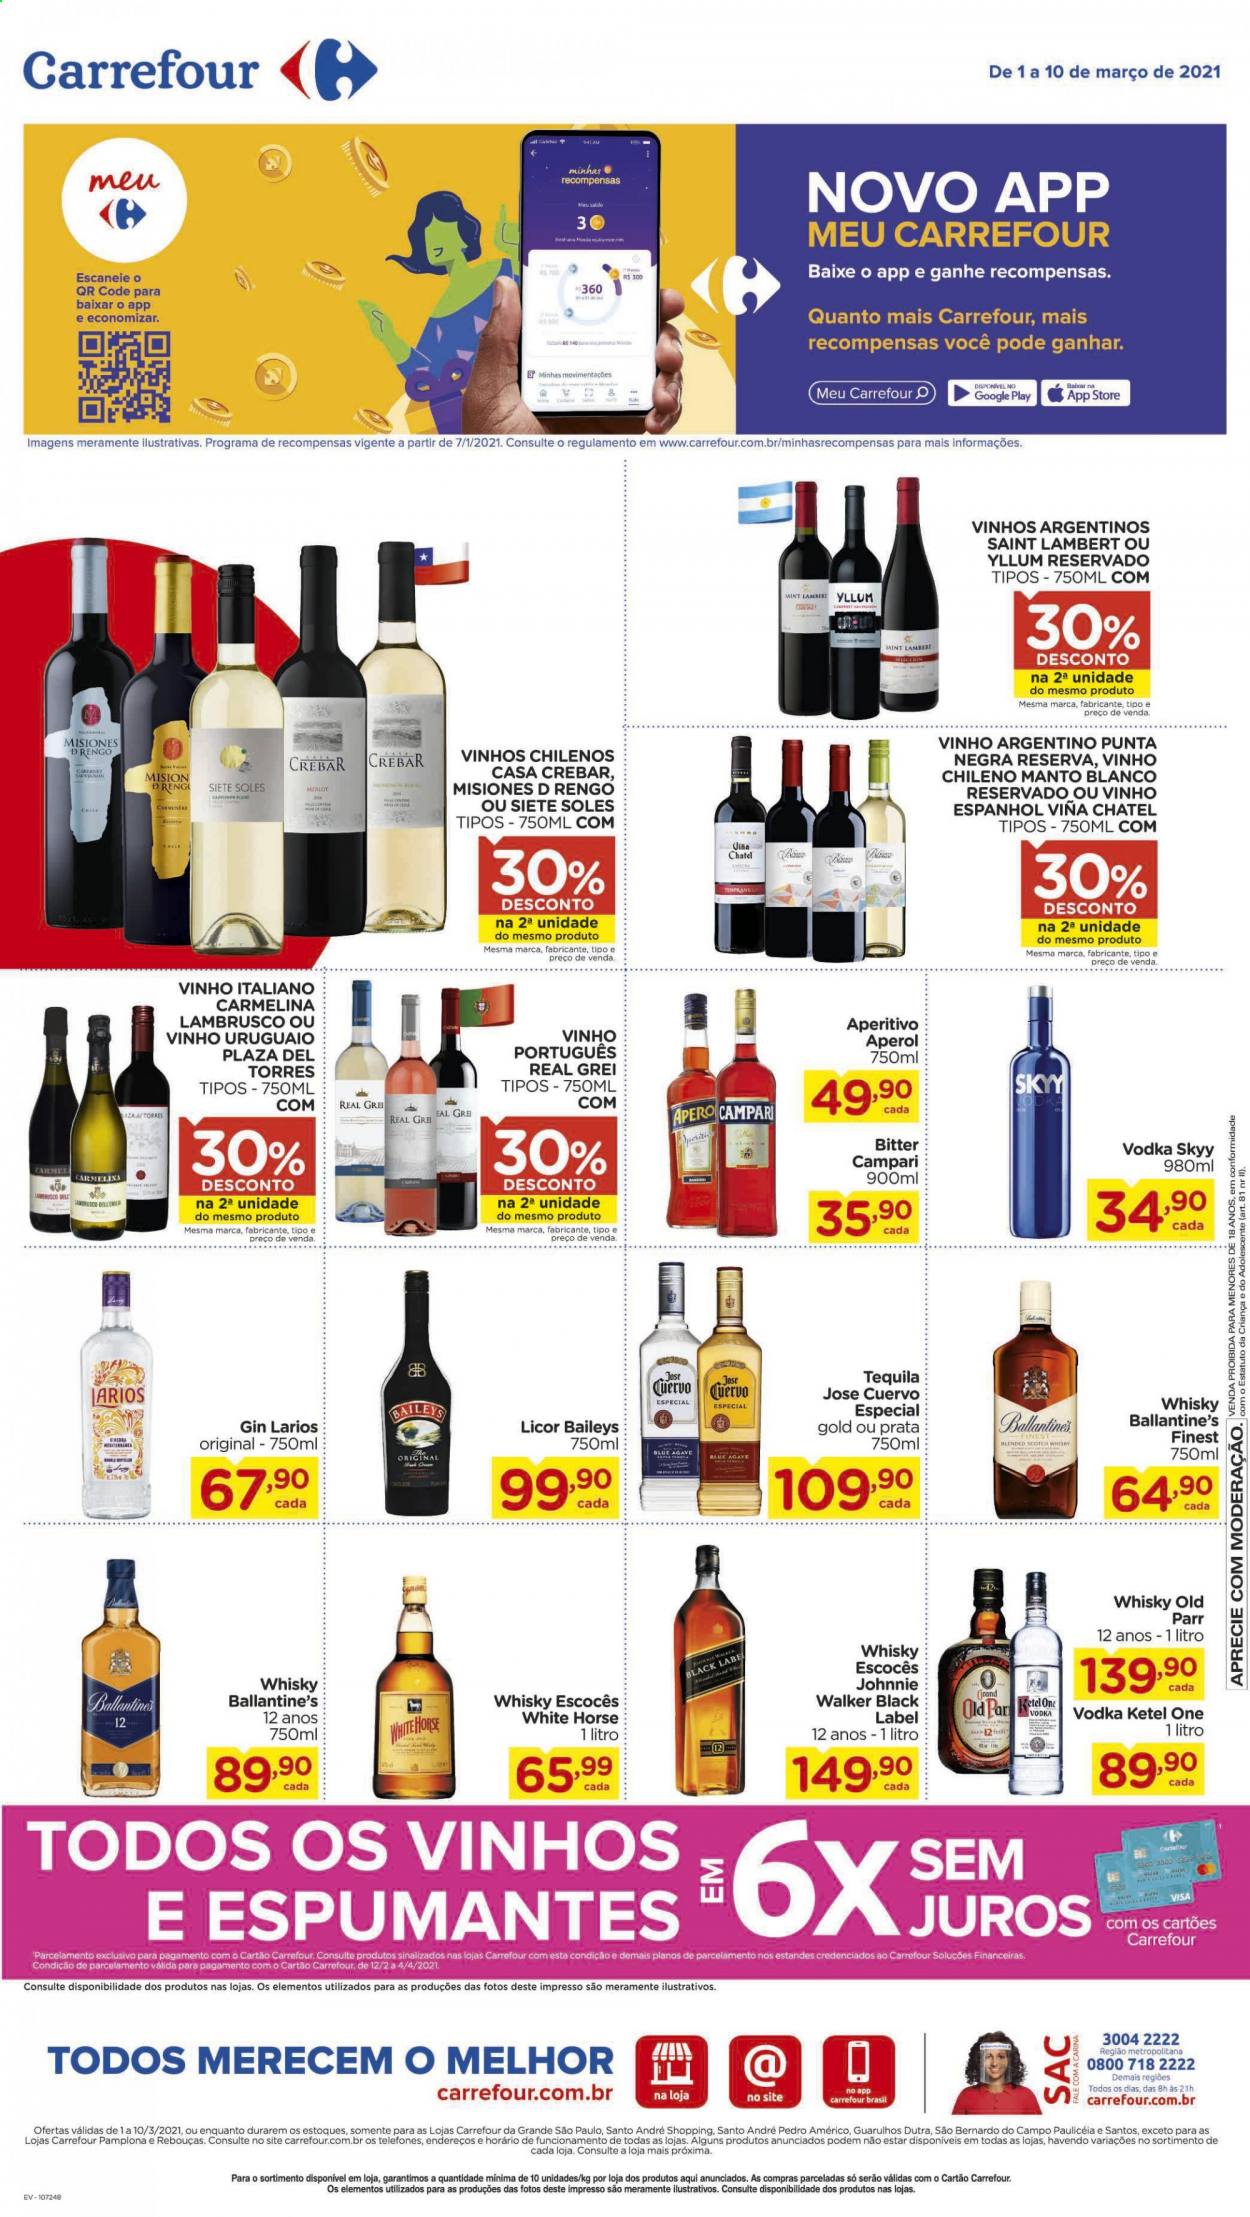 thumbnail - Folheto Carrefour Hiper - 01/03/2021 - 10/03/2021 - Produtos em promoção - vinho, vinho argentino, vinho chileno, vinho italiano, vinho português, lambrusco, Aperol, gin, vodka, whiskey, tequila, Johnnie Walker. Página 11.